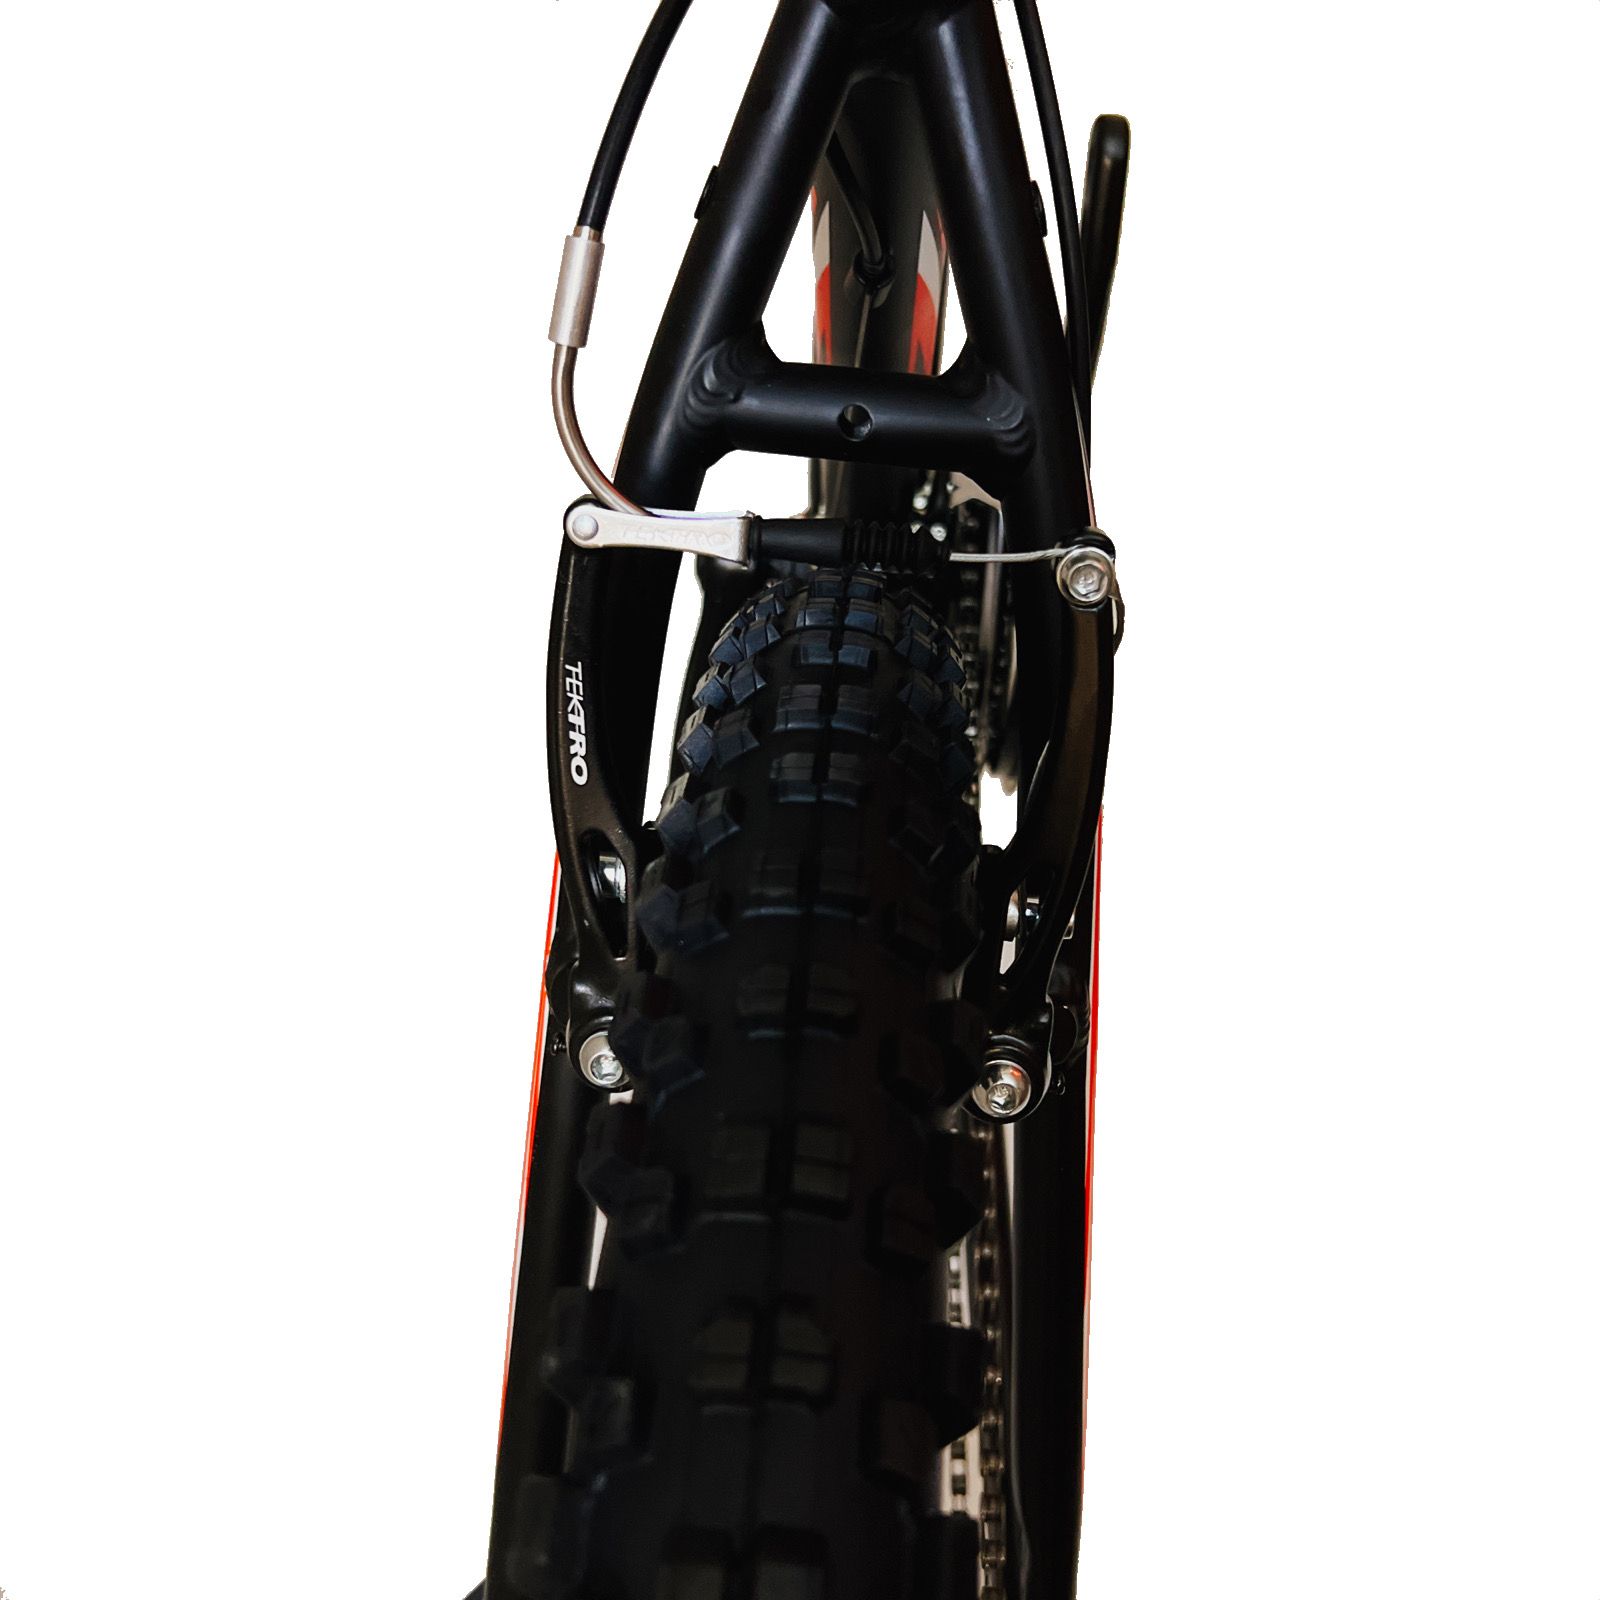 دوچرخه کوهستان ویوا مدل SENATOR سایز 27.5 -  - 15